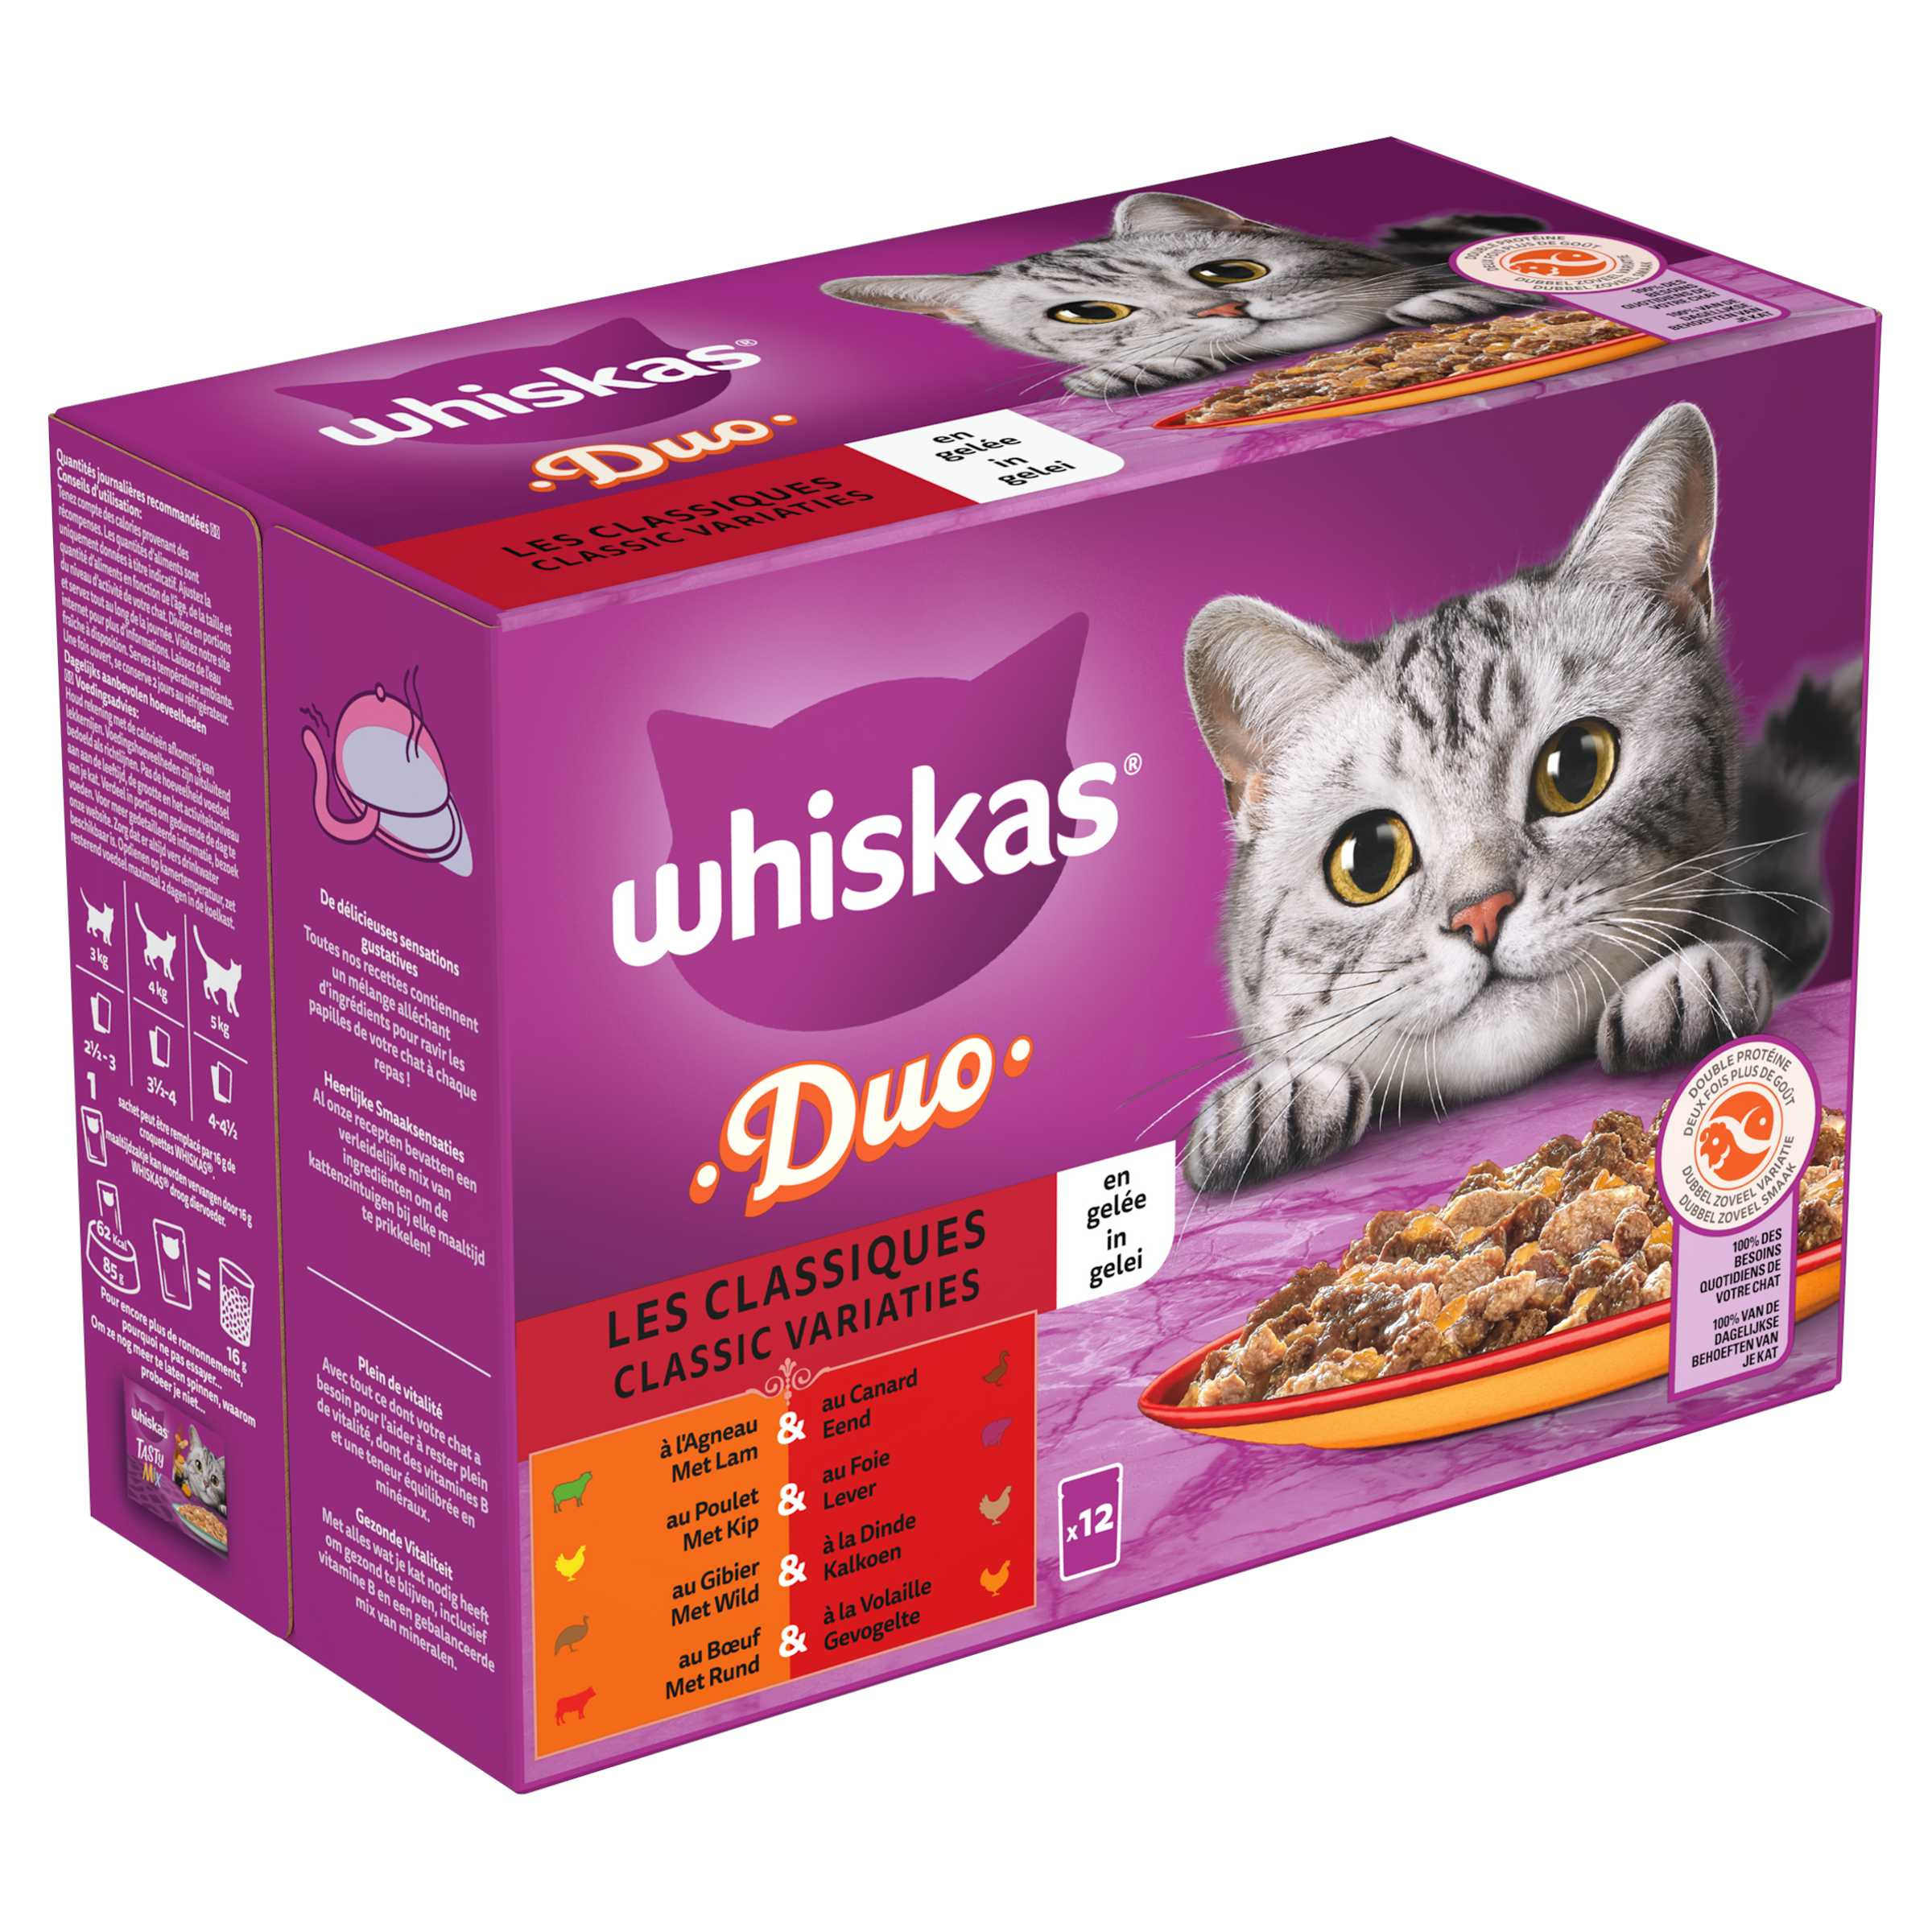 Whiskas 1+ Duo Classic Variaties in gelei maaltijdzakjes multipack  (12 x 85g)